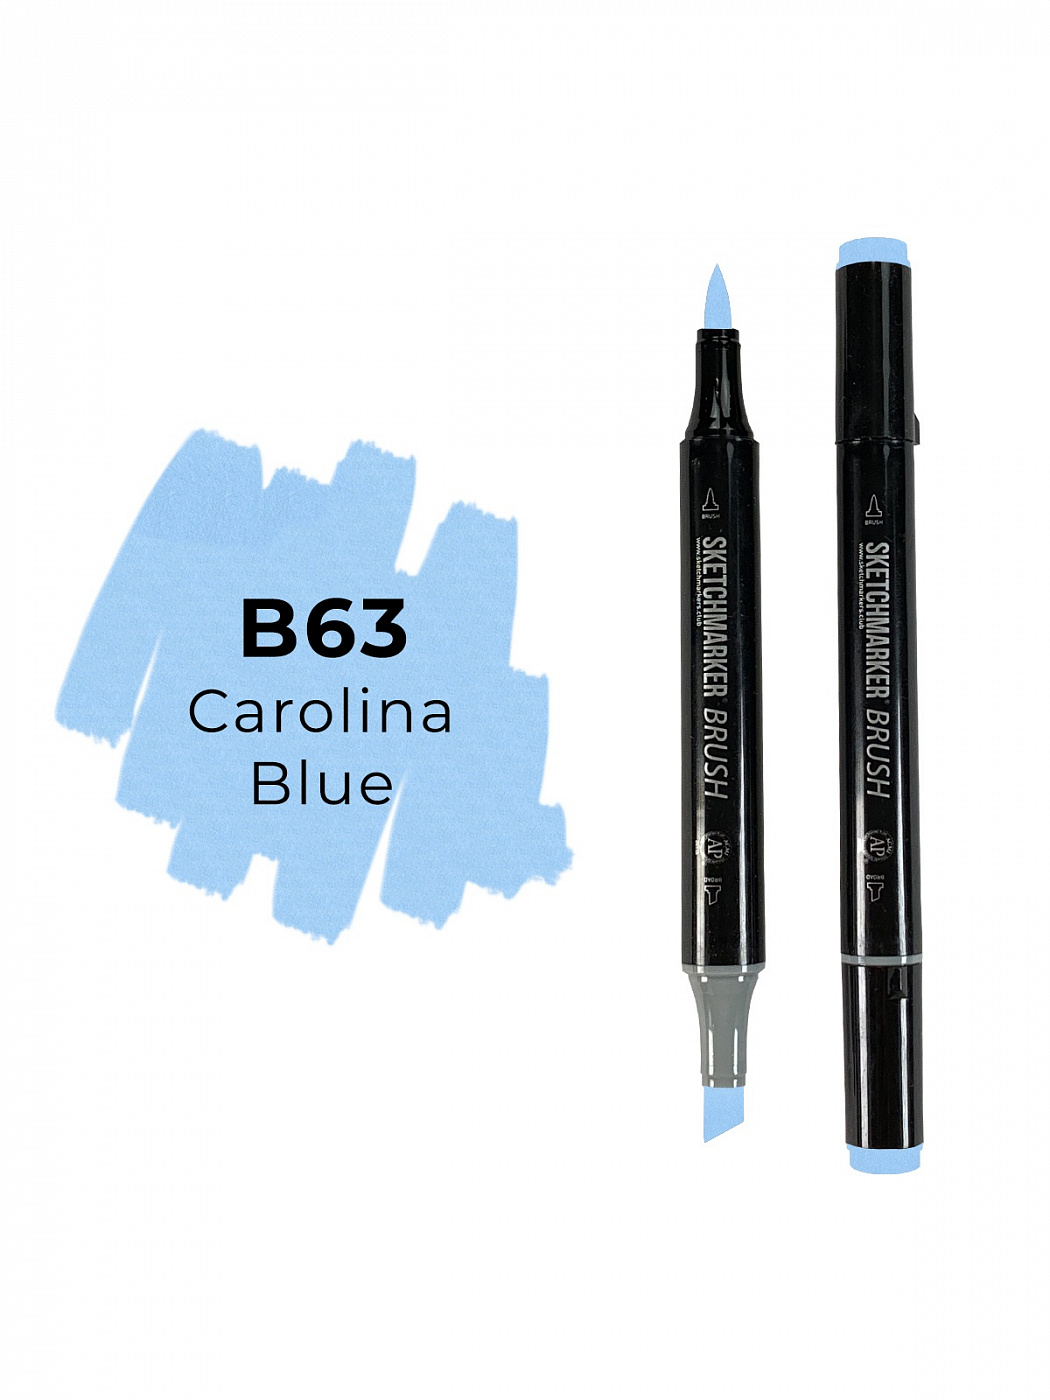 Маркер двухсторонний на спиртовой основе Sketchmarker Brush Цвет Синяя Каролина